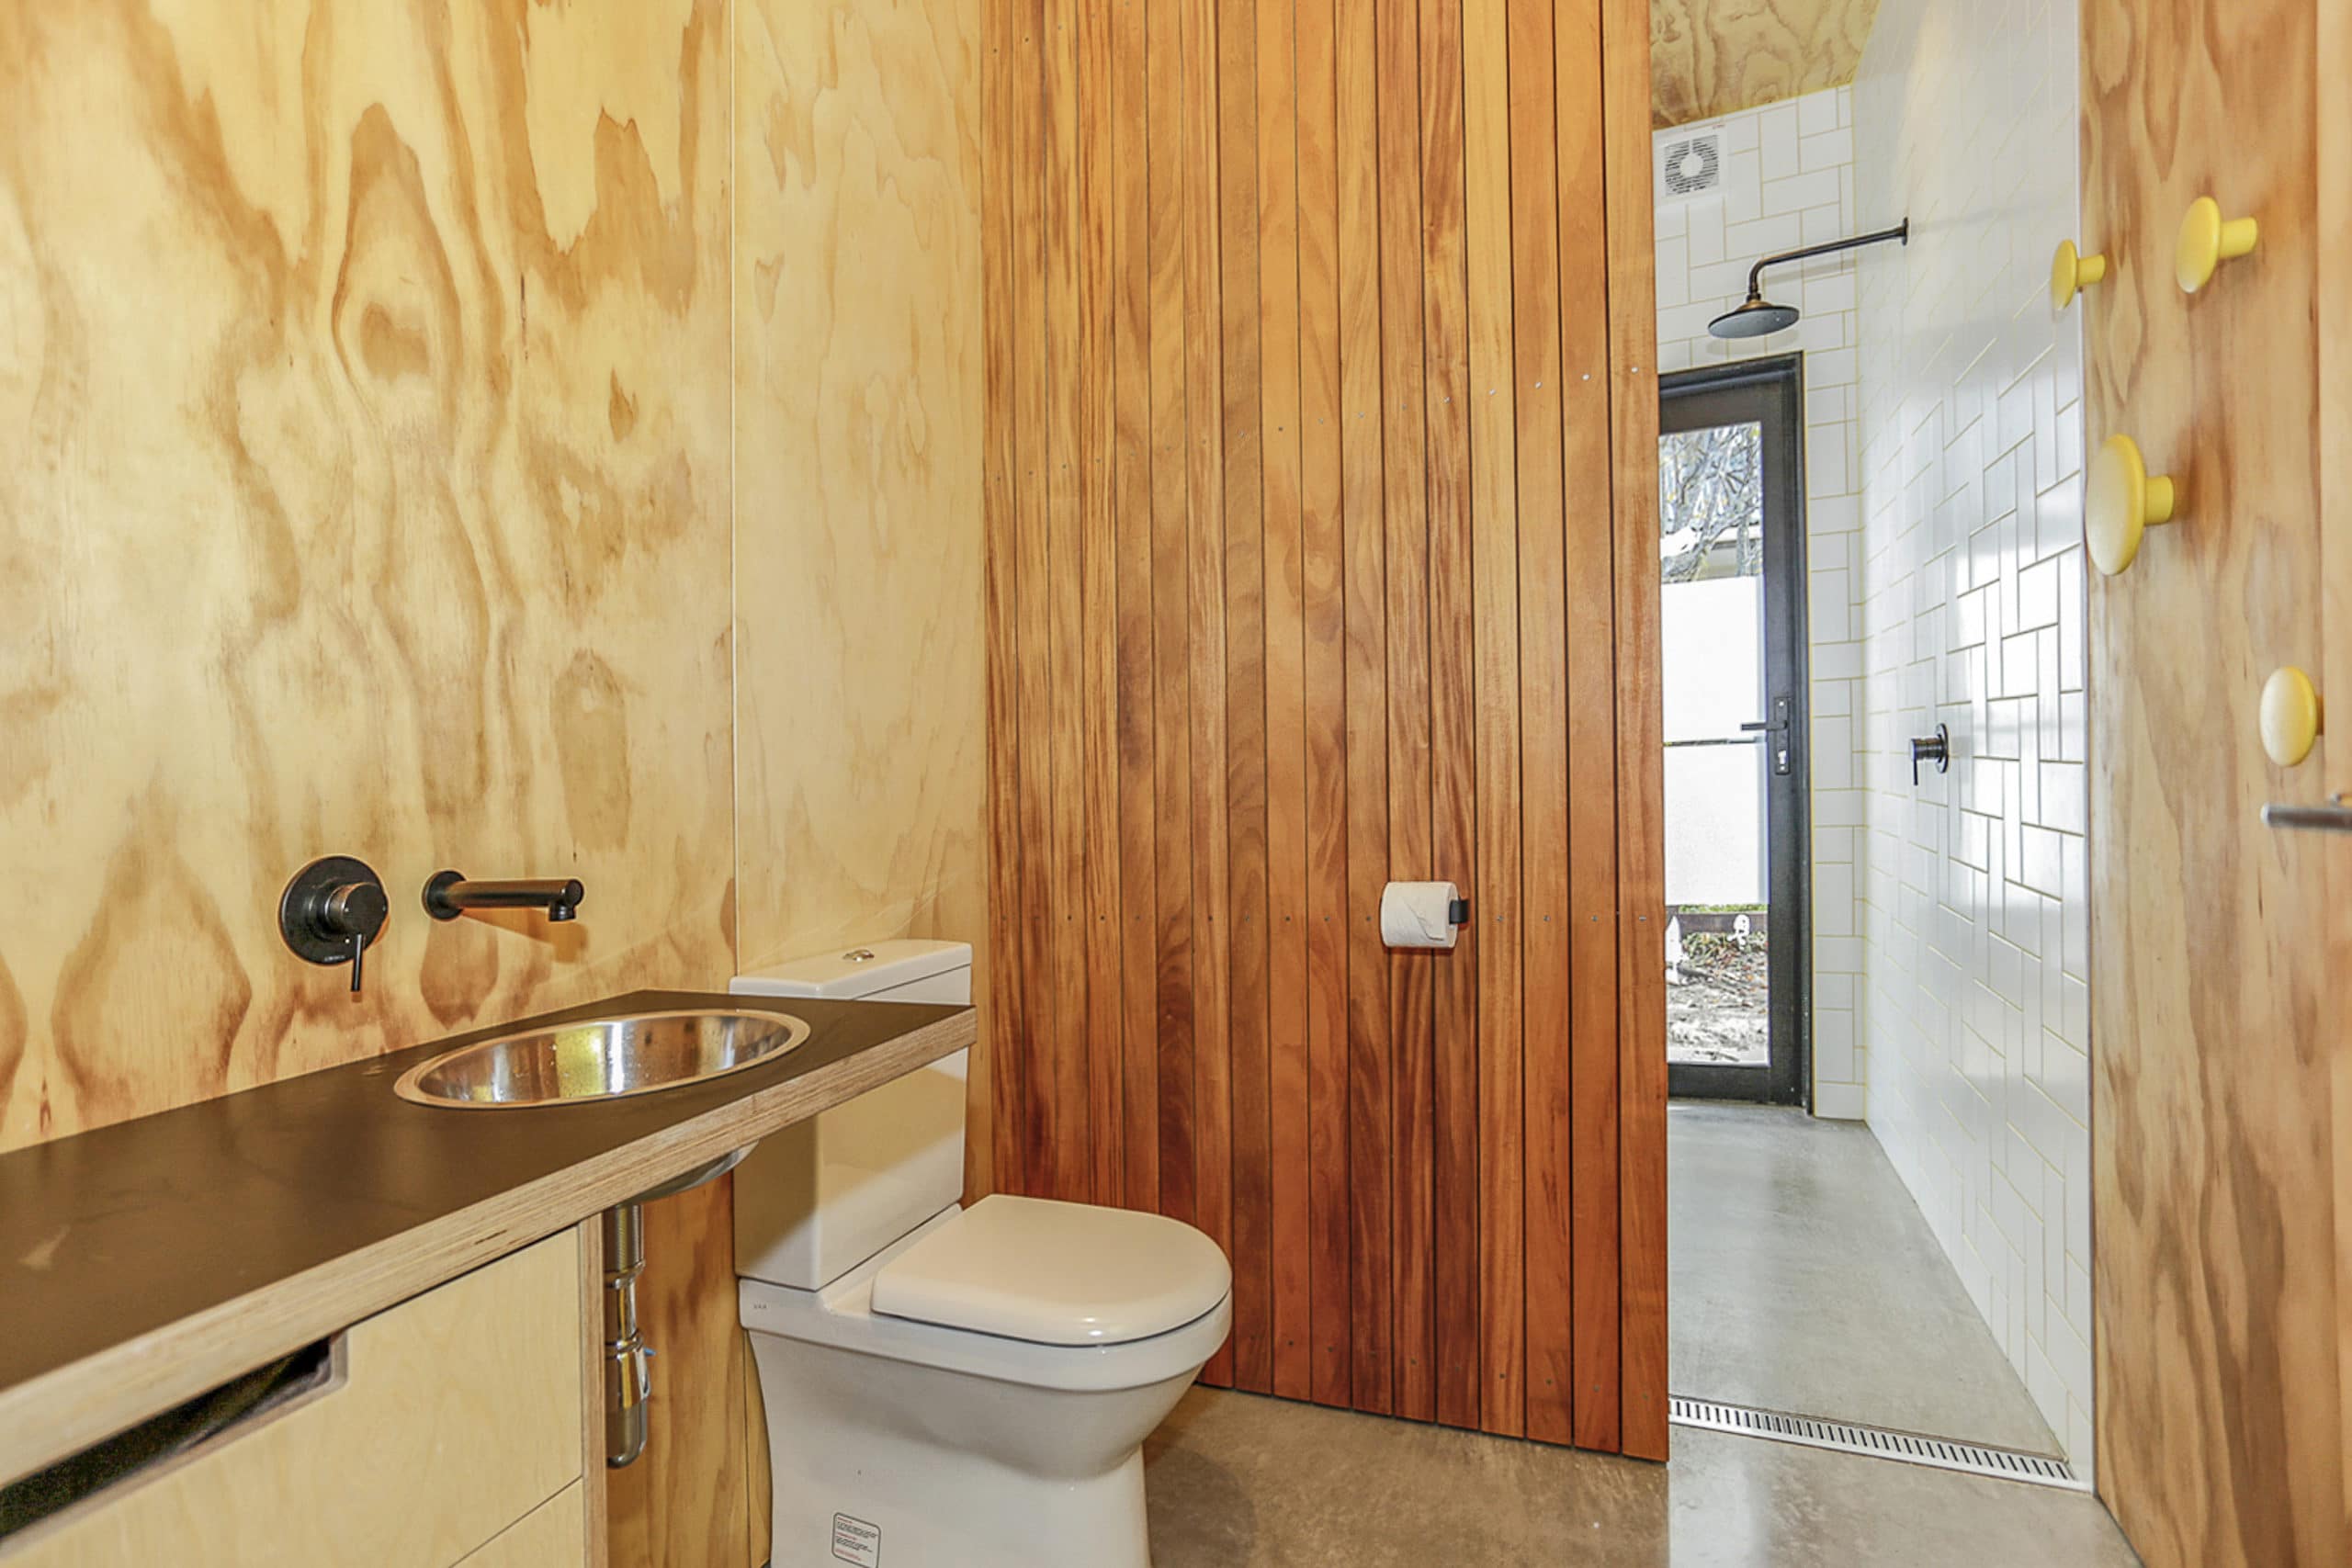 Whangamata home wooden bathroom interior